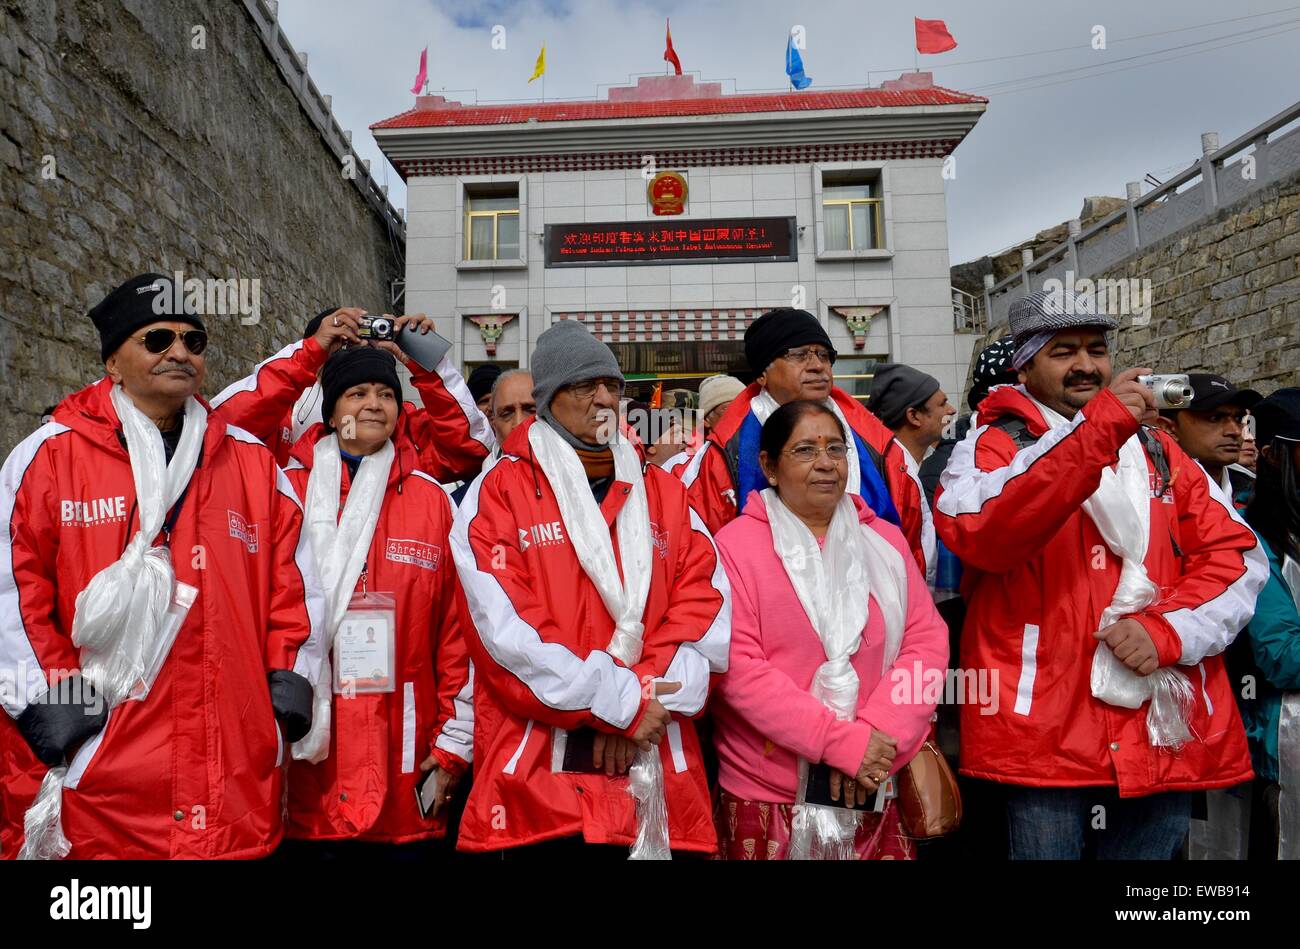 Yadong, Chine. 22 Juin, 2015. Les ressortissants indiens entrez dans la région autonome du Tibet, au sud-ouest de la Chine, via Col Nathu La le 22 juin 2015. Chine le lundi a ouvert une nouvelle route le long du col Nathu La Himalaya pour les pèlerins de l'Inde voyager au Tibet, afin de promouvoir davantage les échanges religieux entre les deux pays. Les ressortissants indiens ont fait le pèlerinage au Tibet chaque année depuis 1981. La Chine a accueilli près de 80 000 pèlerins indiens dans la dernière décennie seulement. © Purbu Zhaxi/Xinhua/Alamy Live News Banque D'Images